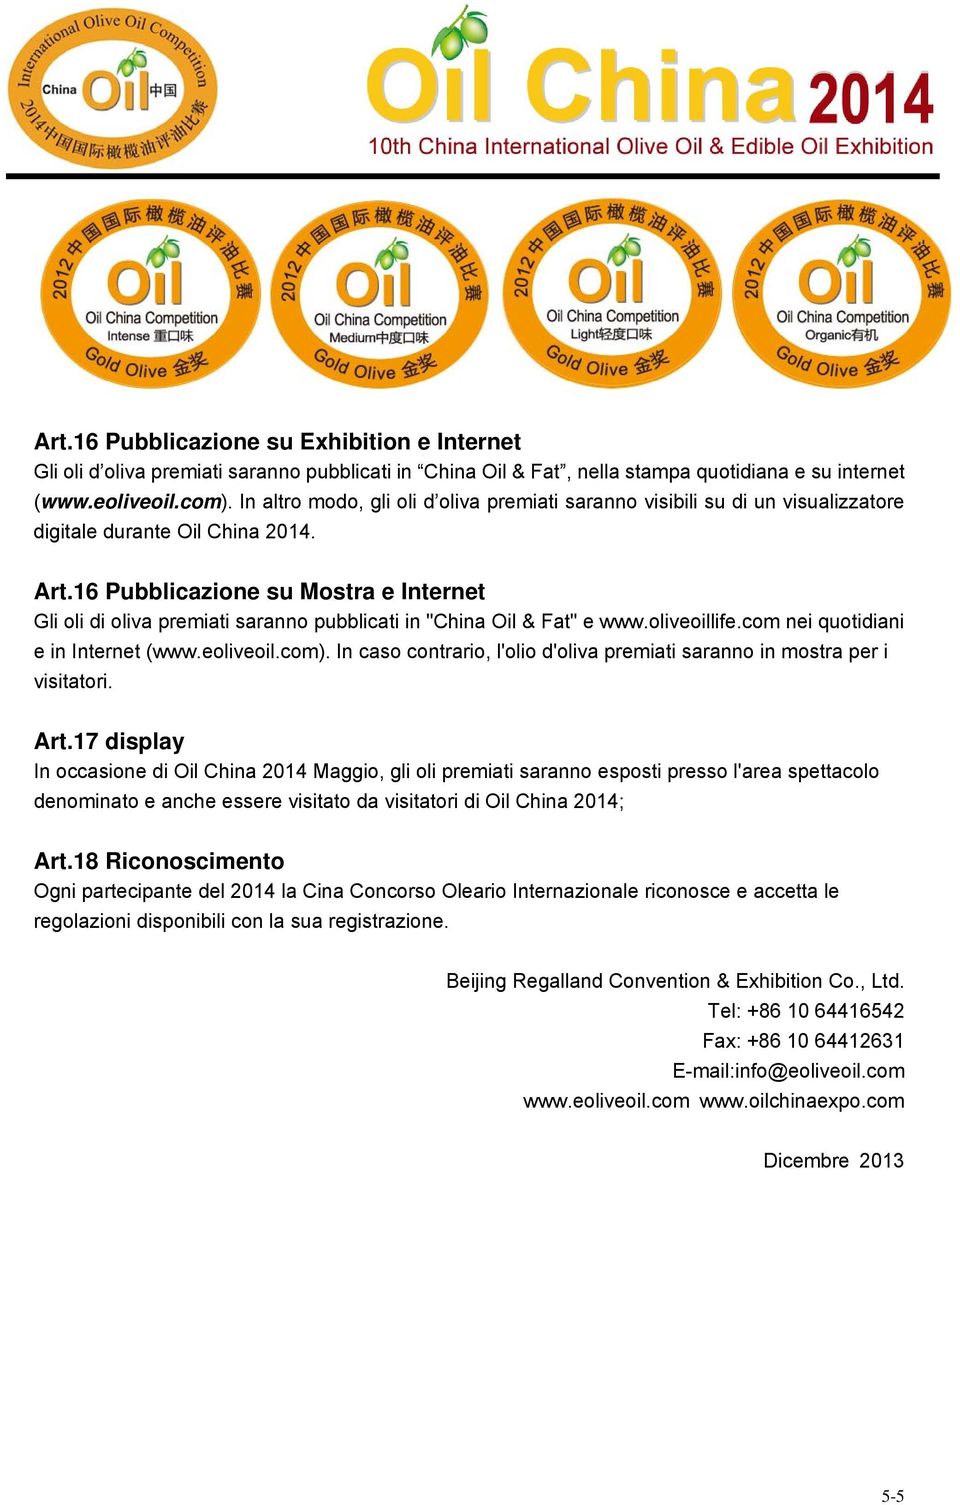 16 Pubblicazione su Mostra e Internet Gli oli di oliva premiati saranno pubblicati in "China Oil & Fat" e www.oliveoillife.com nei quotidiani e in Internet (www.eoliveoil.com).